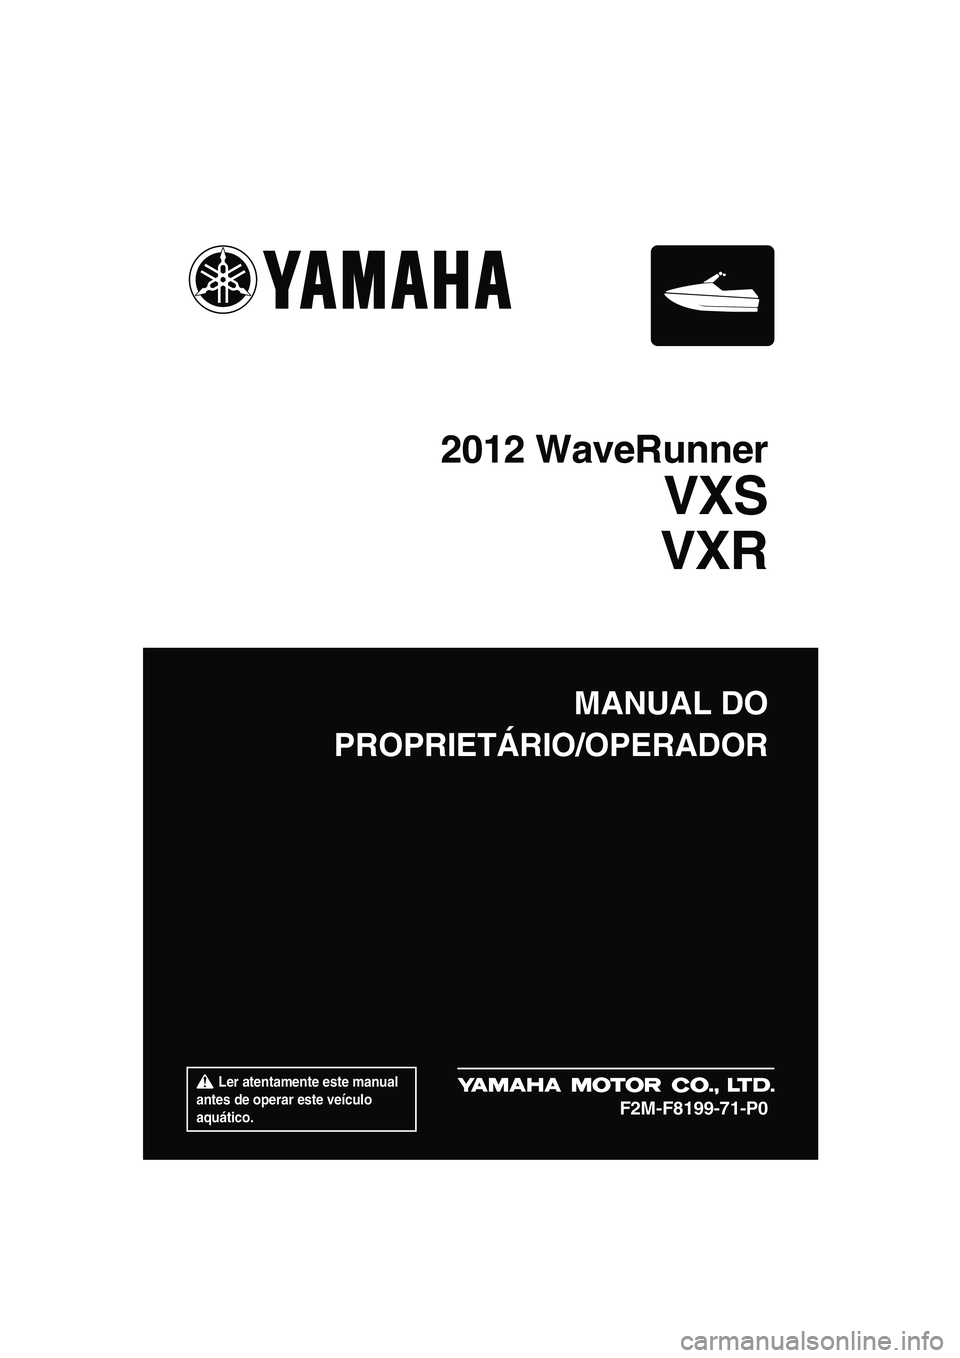 YAMAHA VXS 2012  Manual de utilização (in Portuguese)  Ler atentamente este manual 
antes de operar este veículo 
aquático.
MANUAL DO
PROPRIETÁRIO/OPERADOR
2012 WaveRunner
VXS
VXR
F2M-F8199-71-P0
UF2M71P0.book  Page 1  Monday, July 4, 2011  11:45 AM 